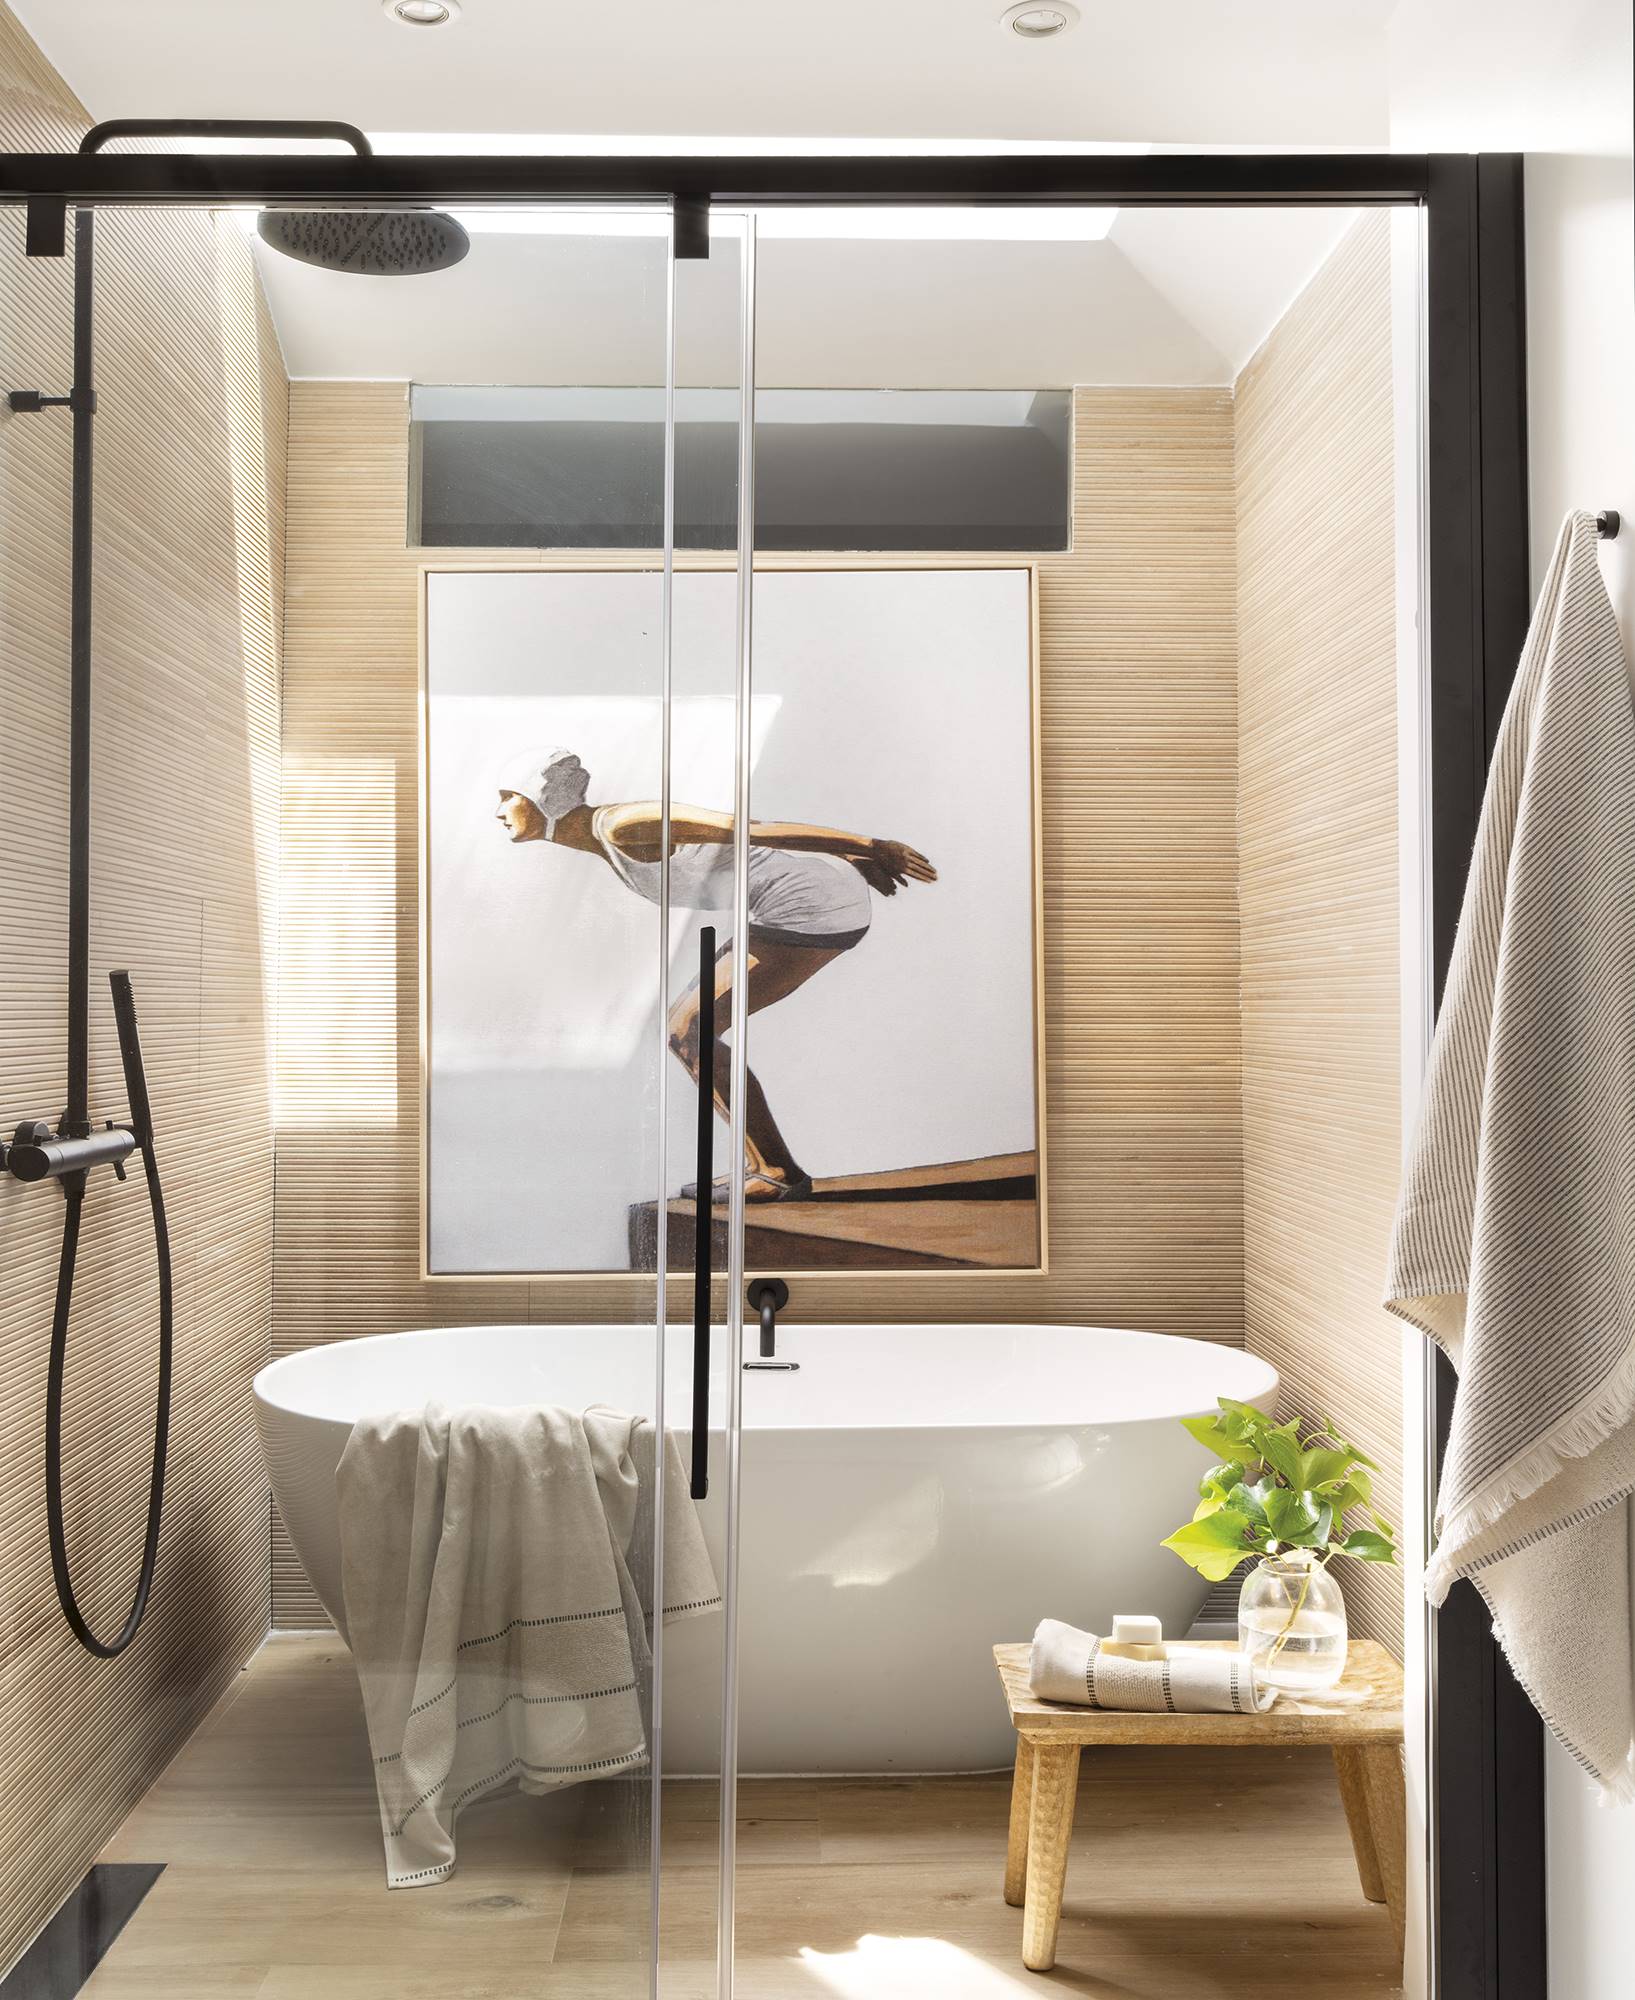 Un baño con bañera y ducha en el mismo espacio en la casa de la interiorista Paula Duarte.